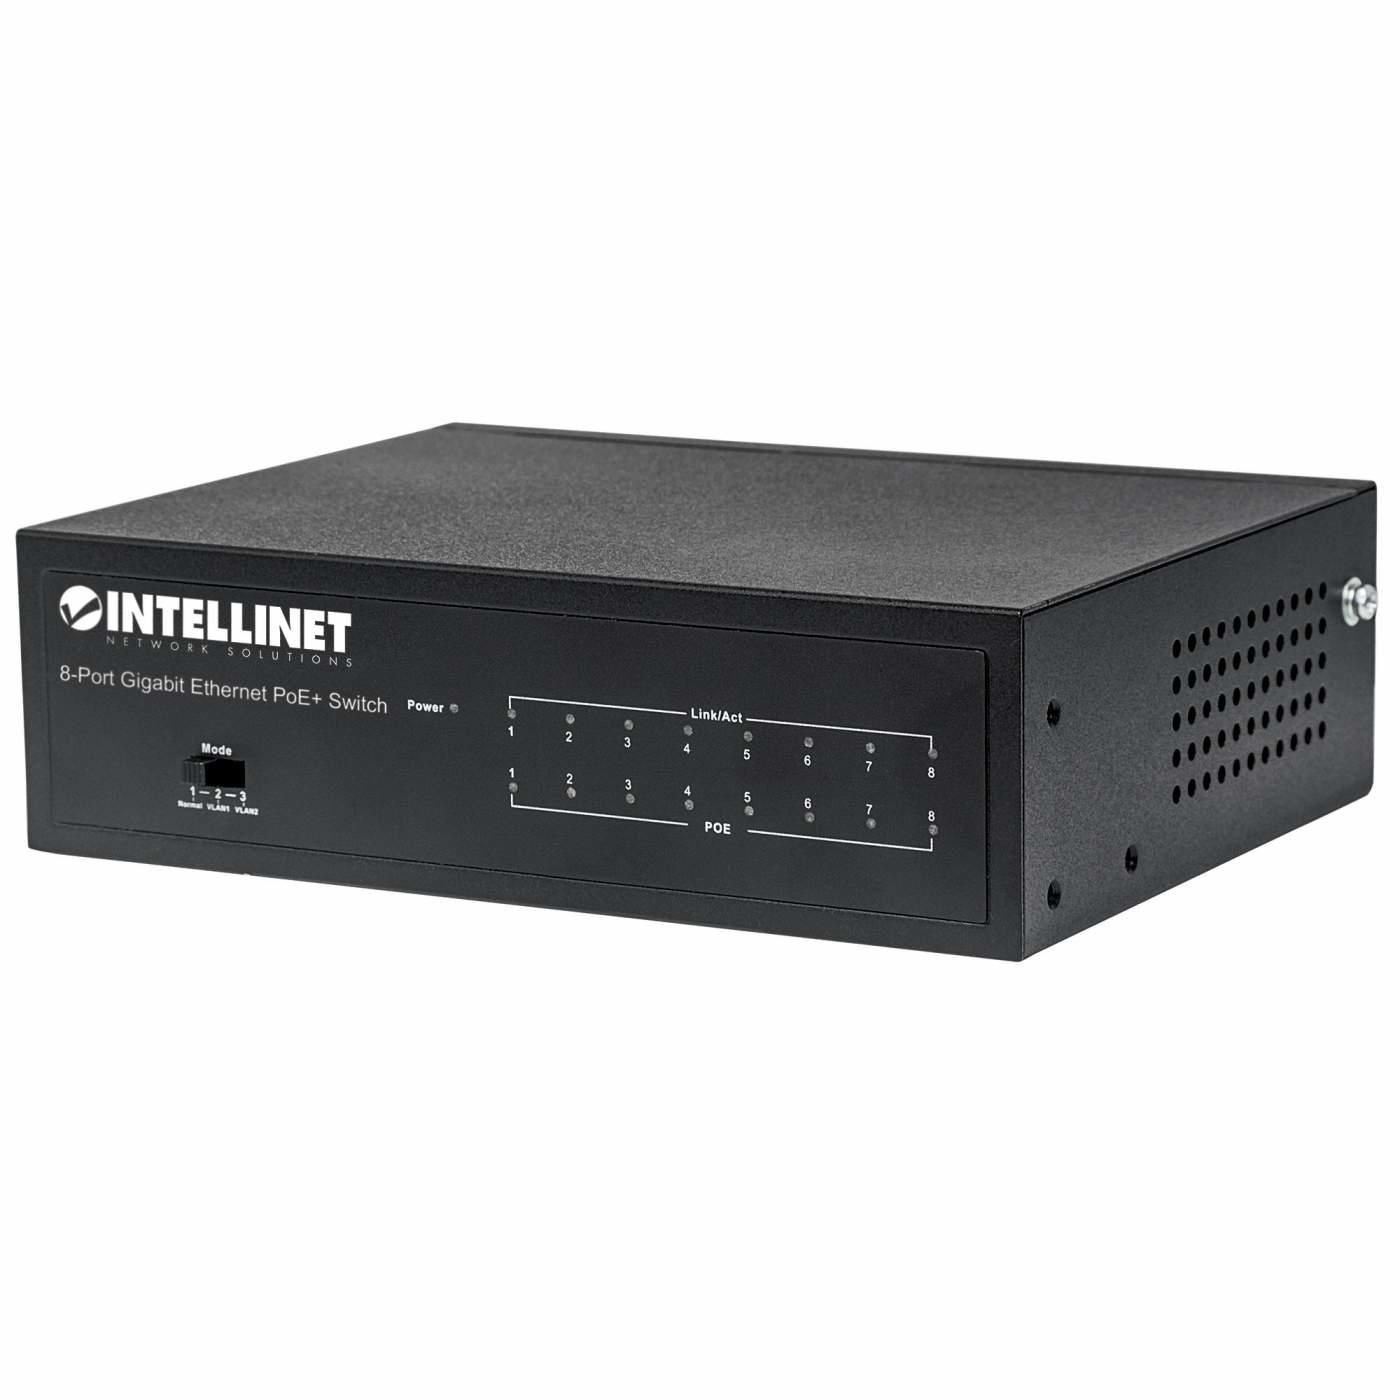 Intellinet 561204 8-Port Gigabit Ethernet PoE+ 